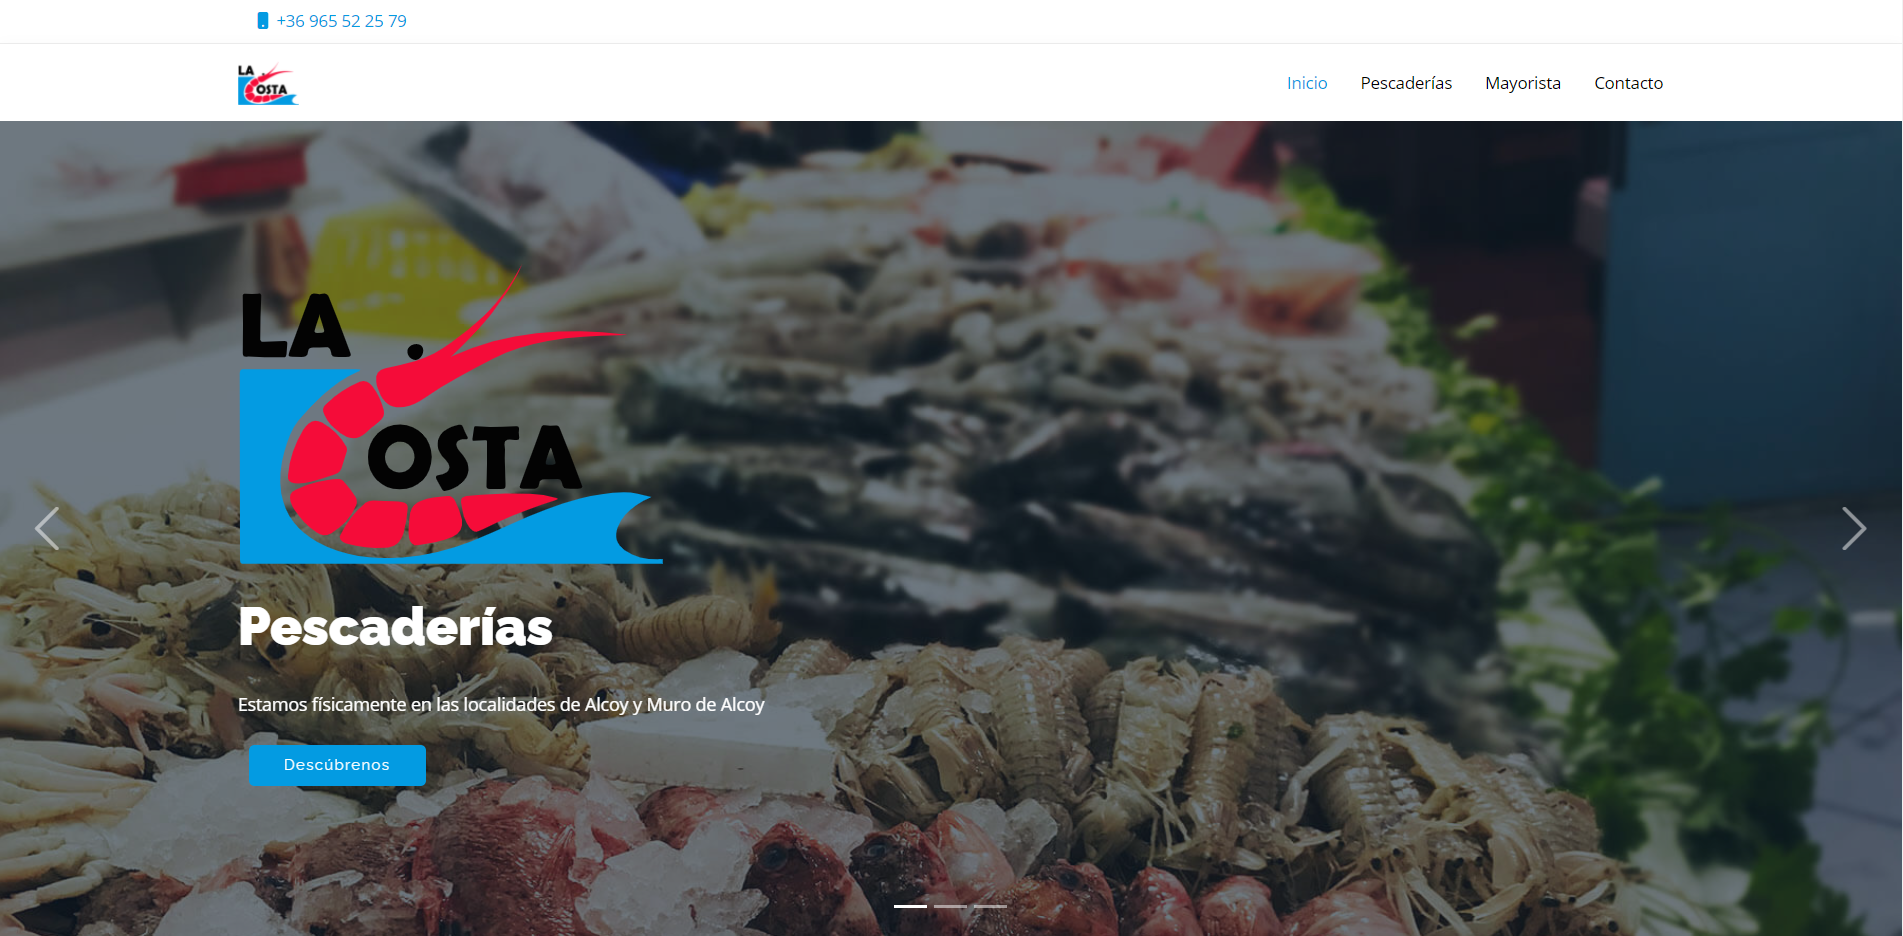 Proyecto para la mejora del posicionamiento web del sitio pescadoslacosta.es